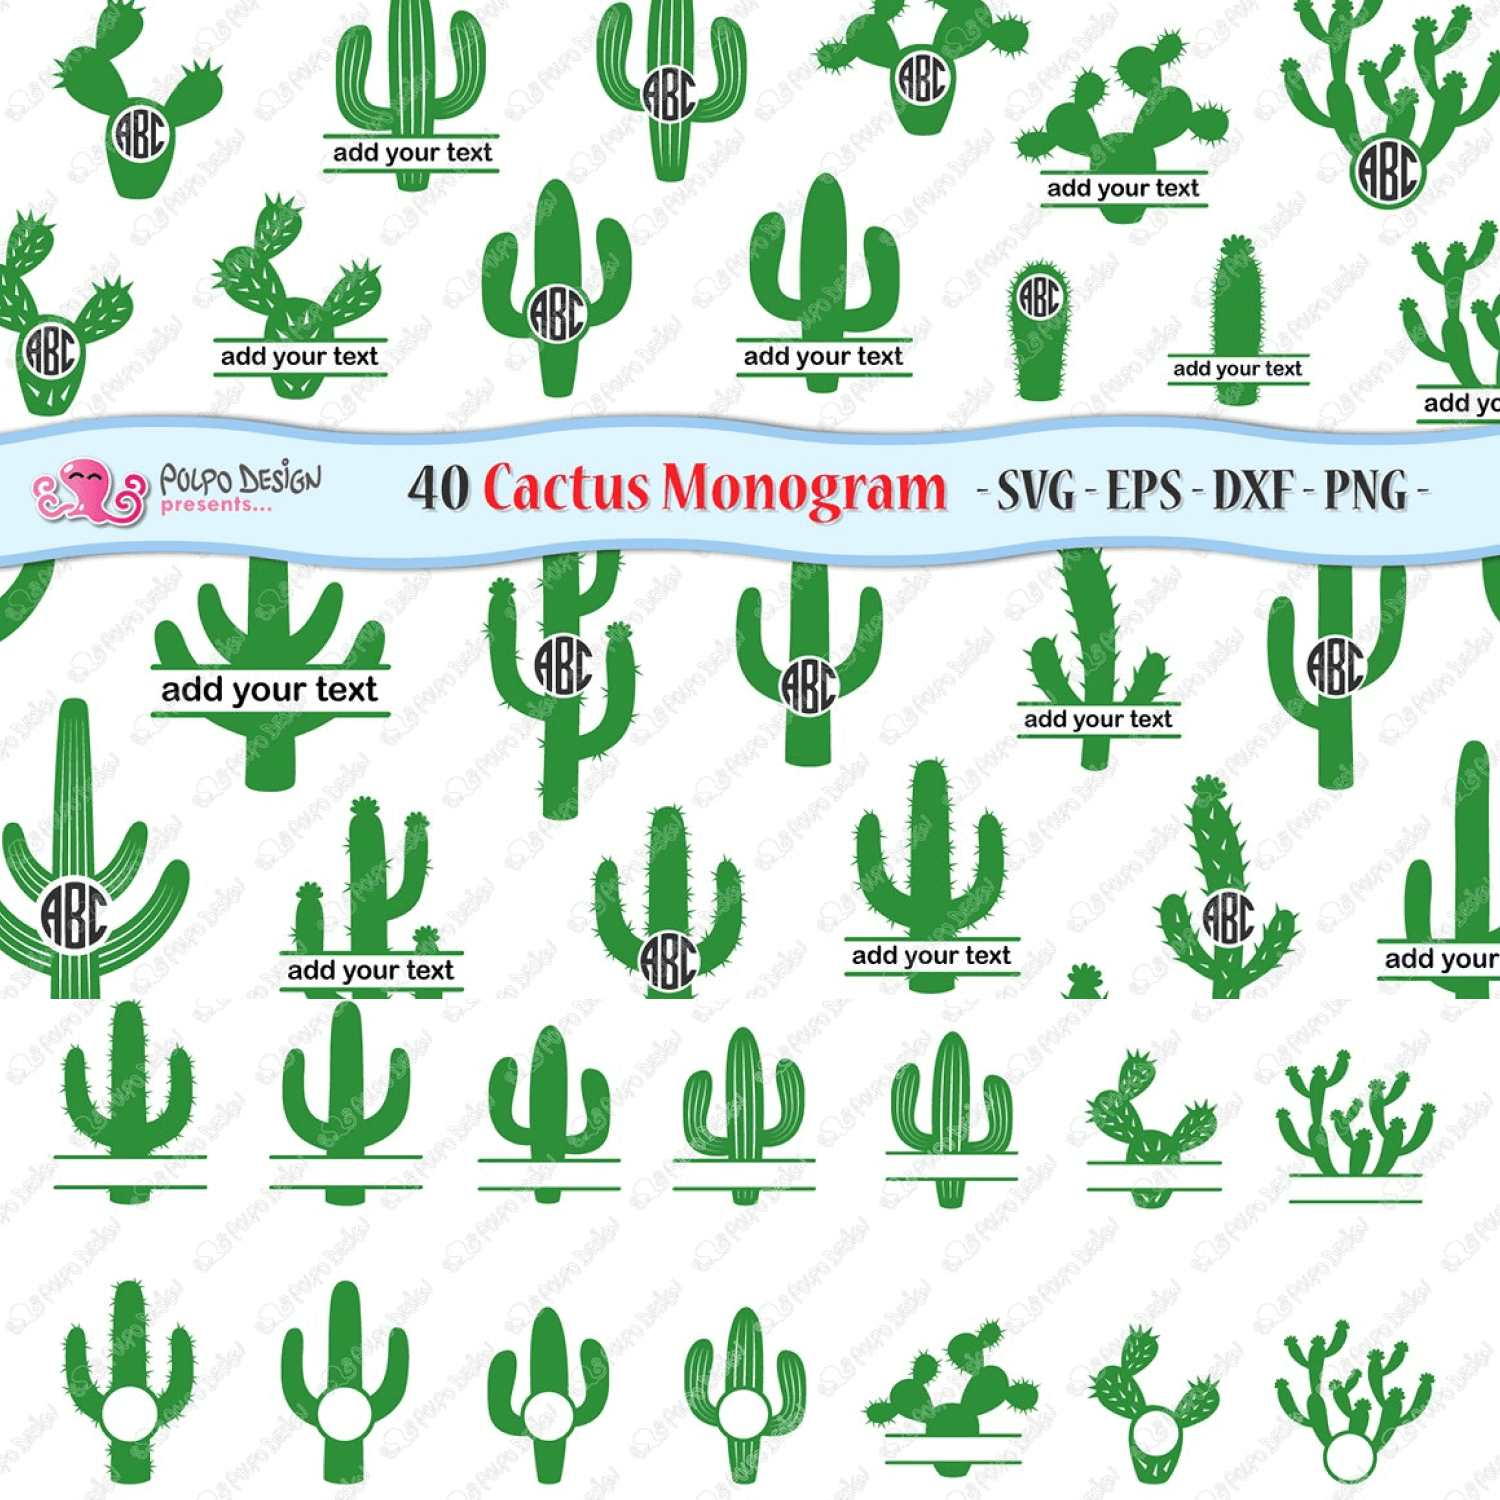 Polpo Design Presents Cactus Monogram.